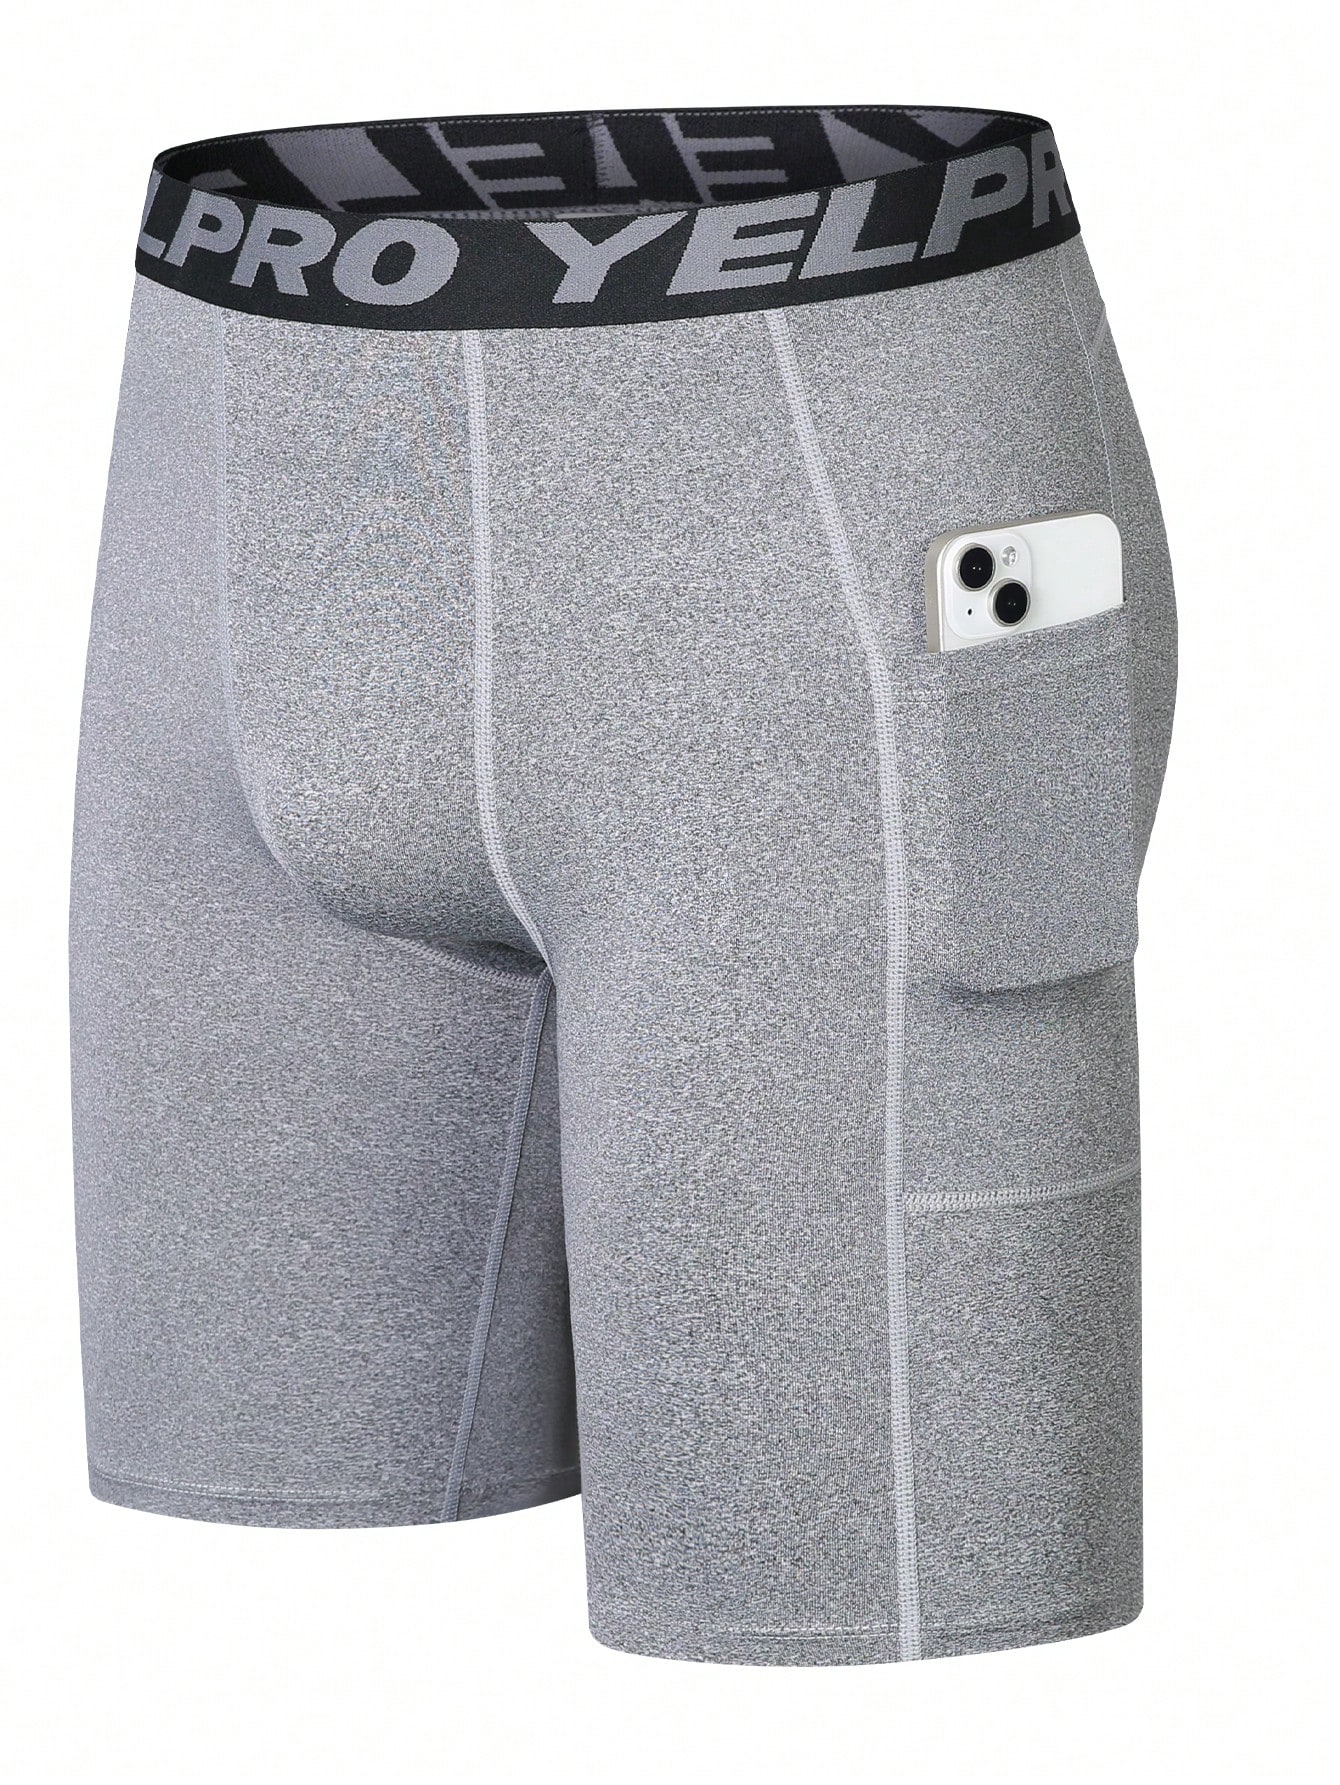 Мужские шорты для фитнеса с лентой с надписью и карманом, серый